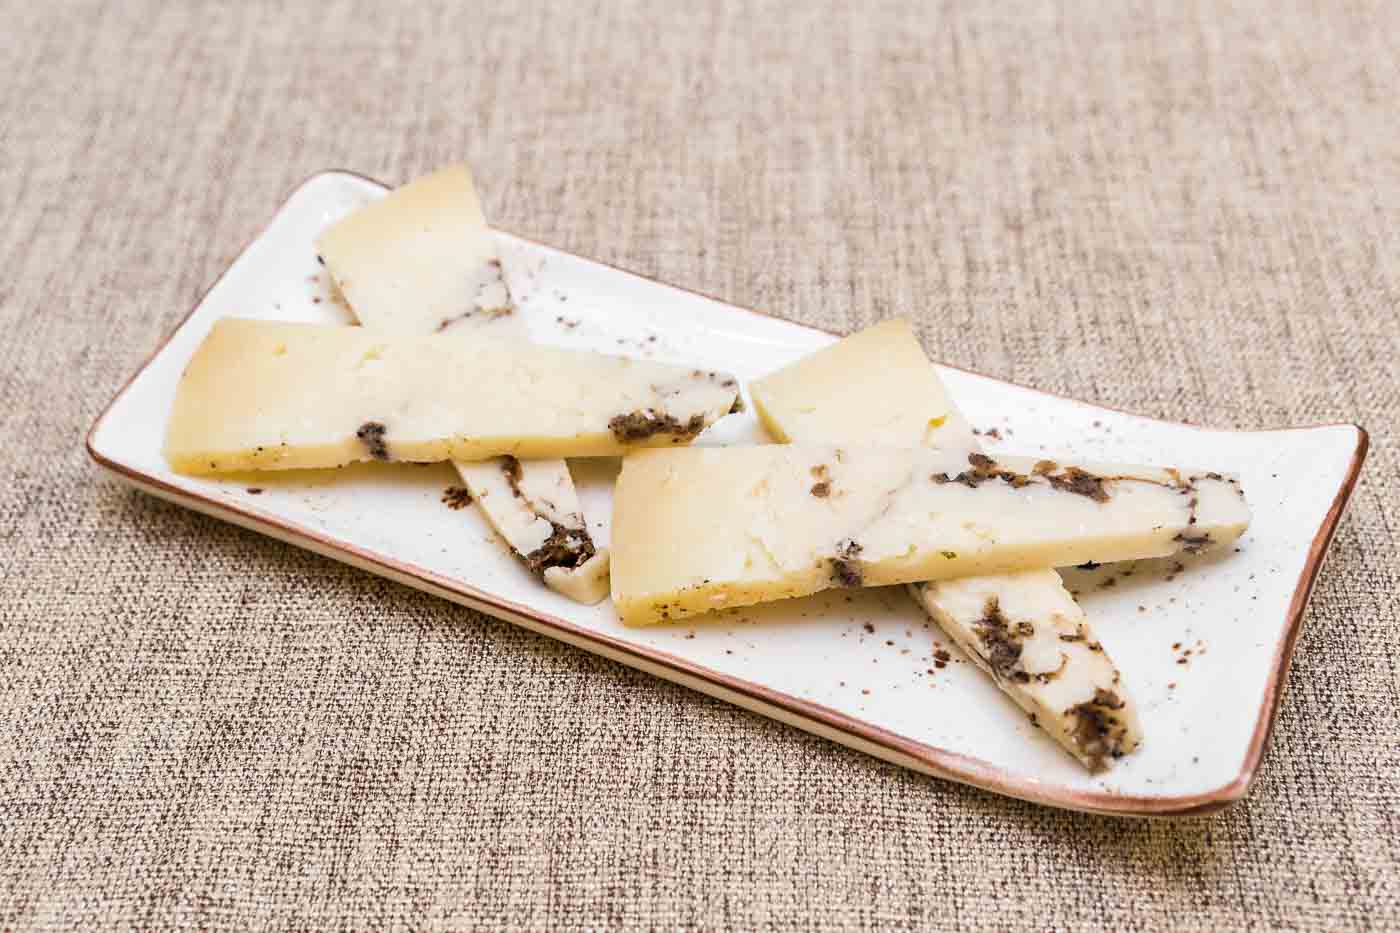 Pecorino cheese with black truffle